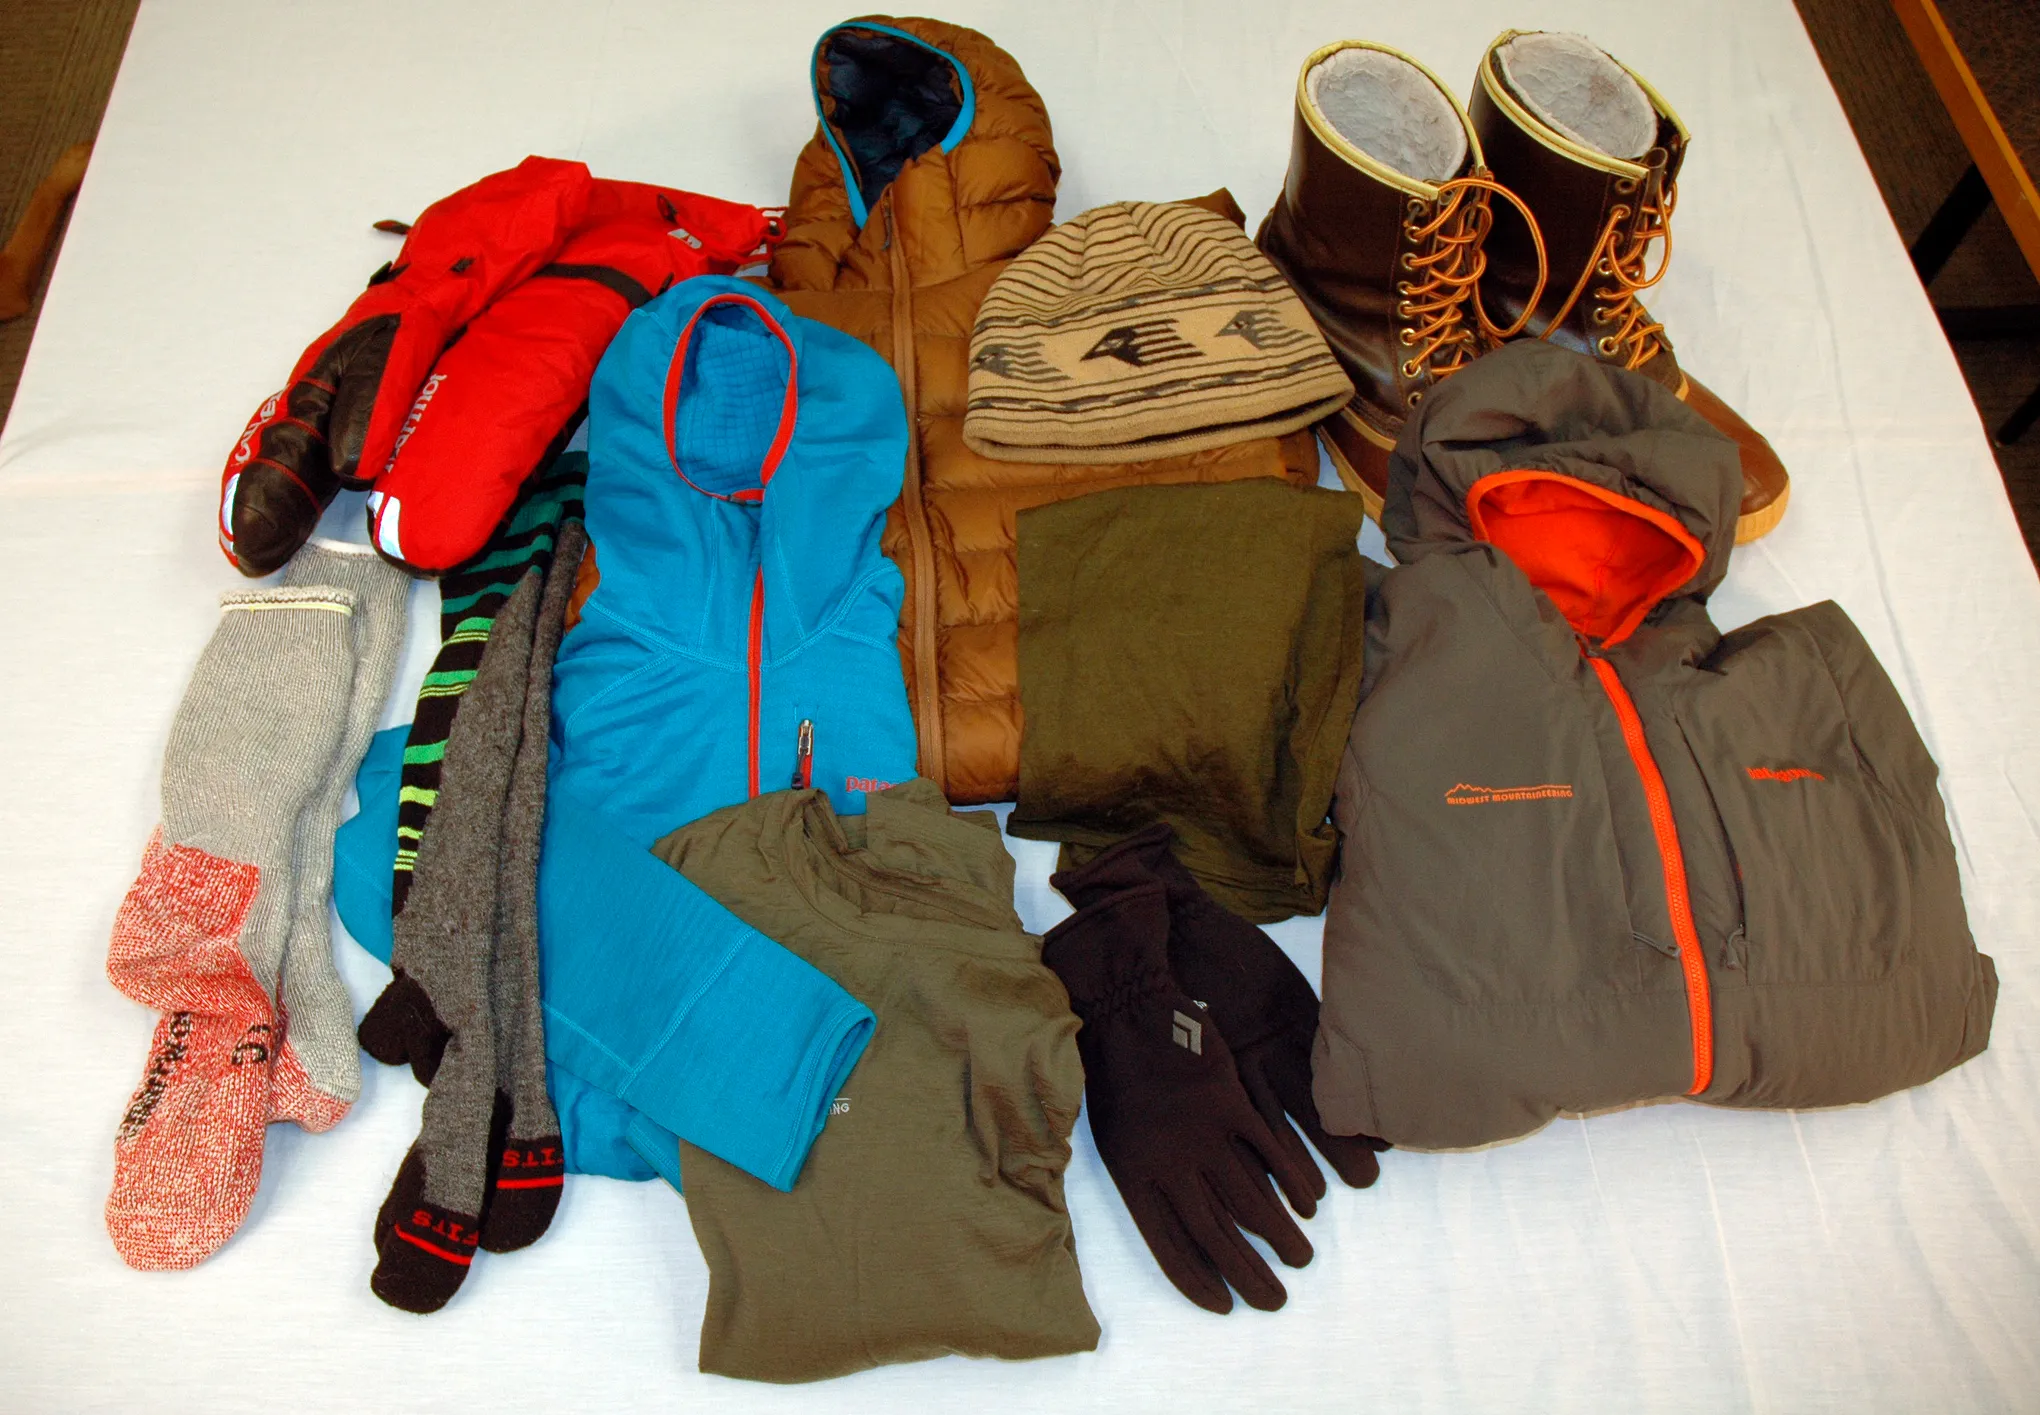 لباس کوهنوردی باید چگونه باشد؟